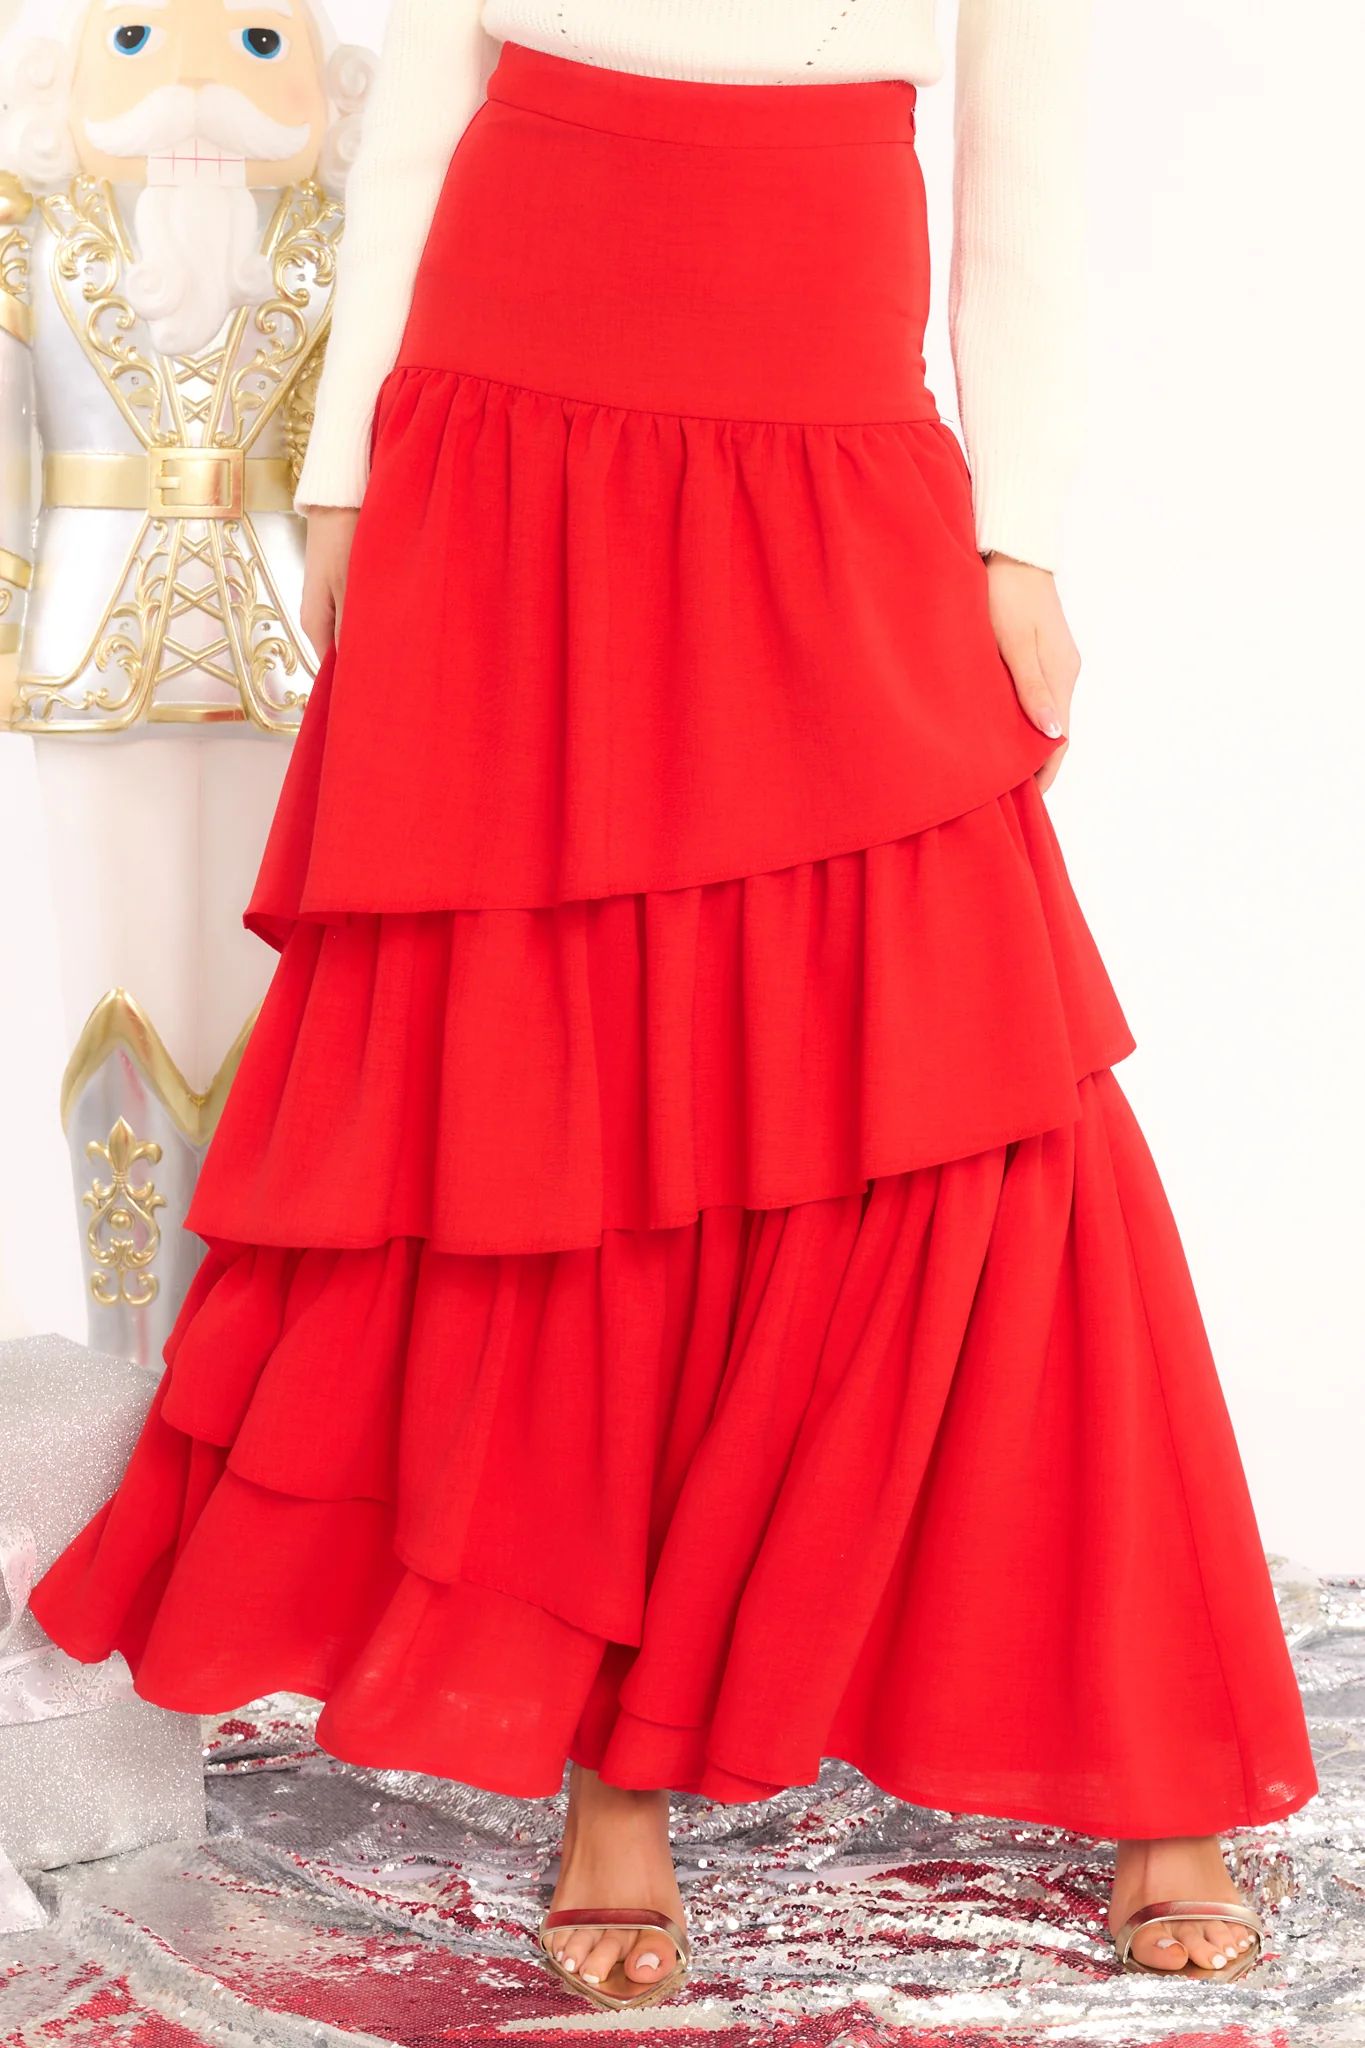 Burning Up The Dance Floor Red Skirt | Red Dress 